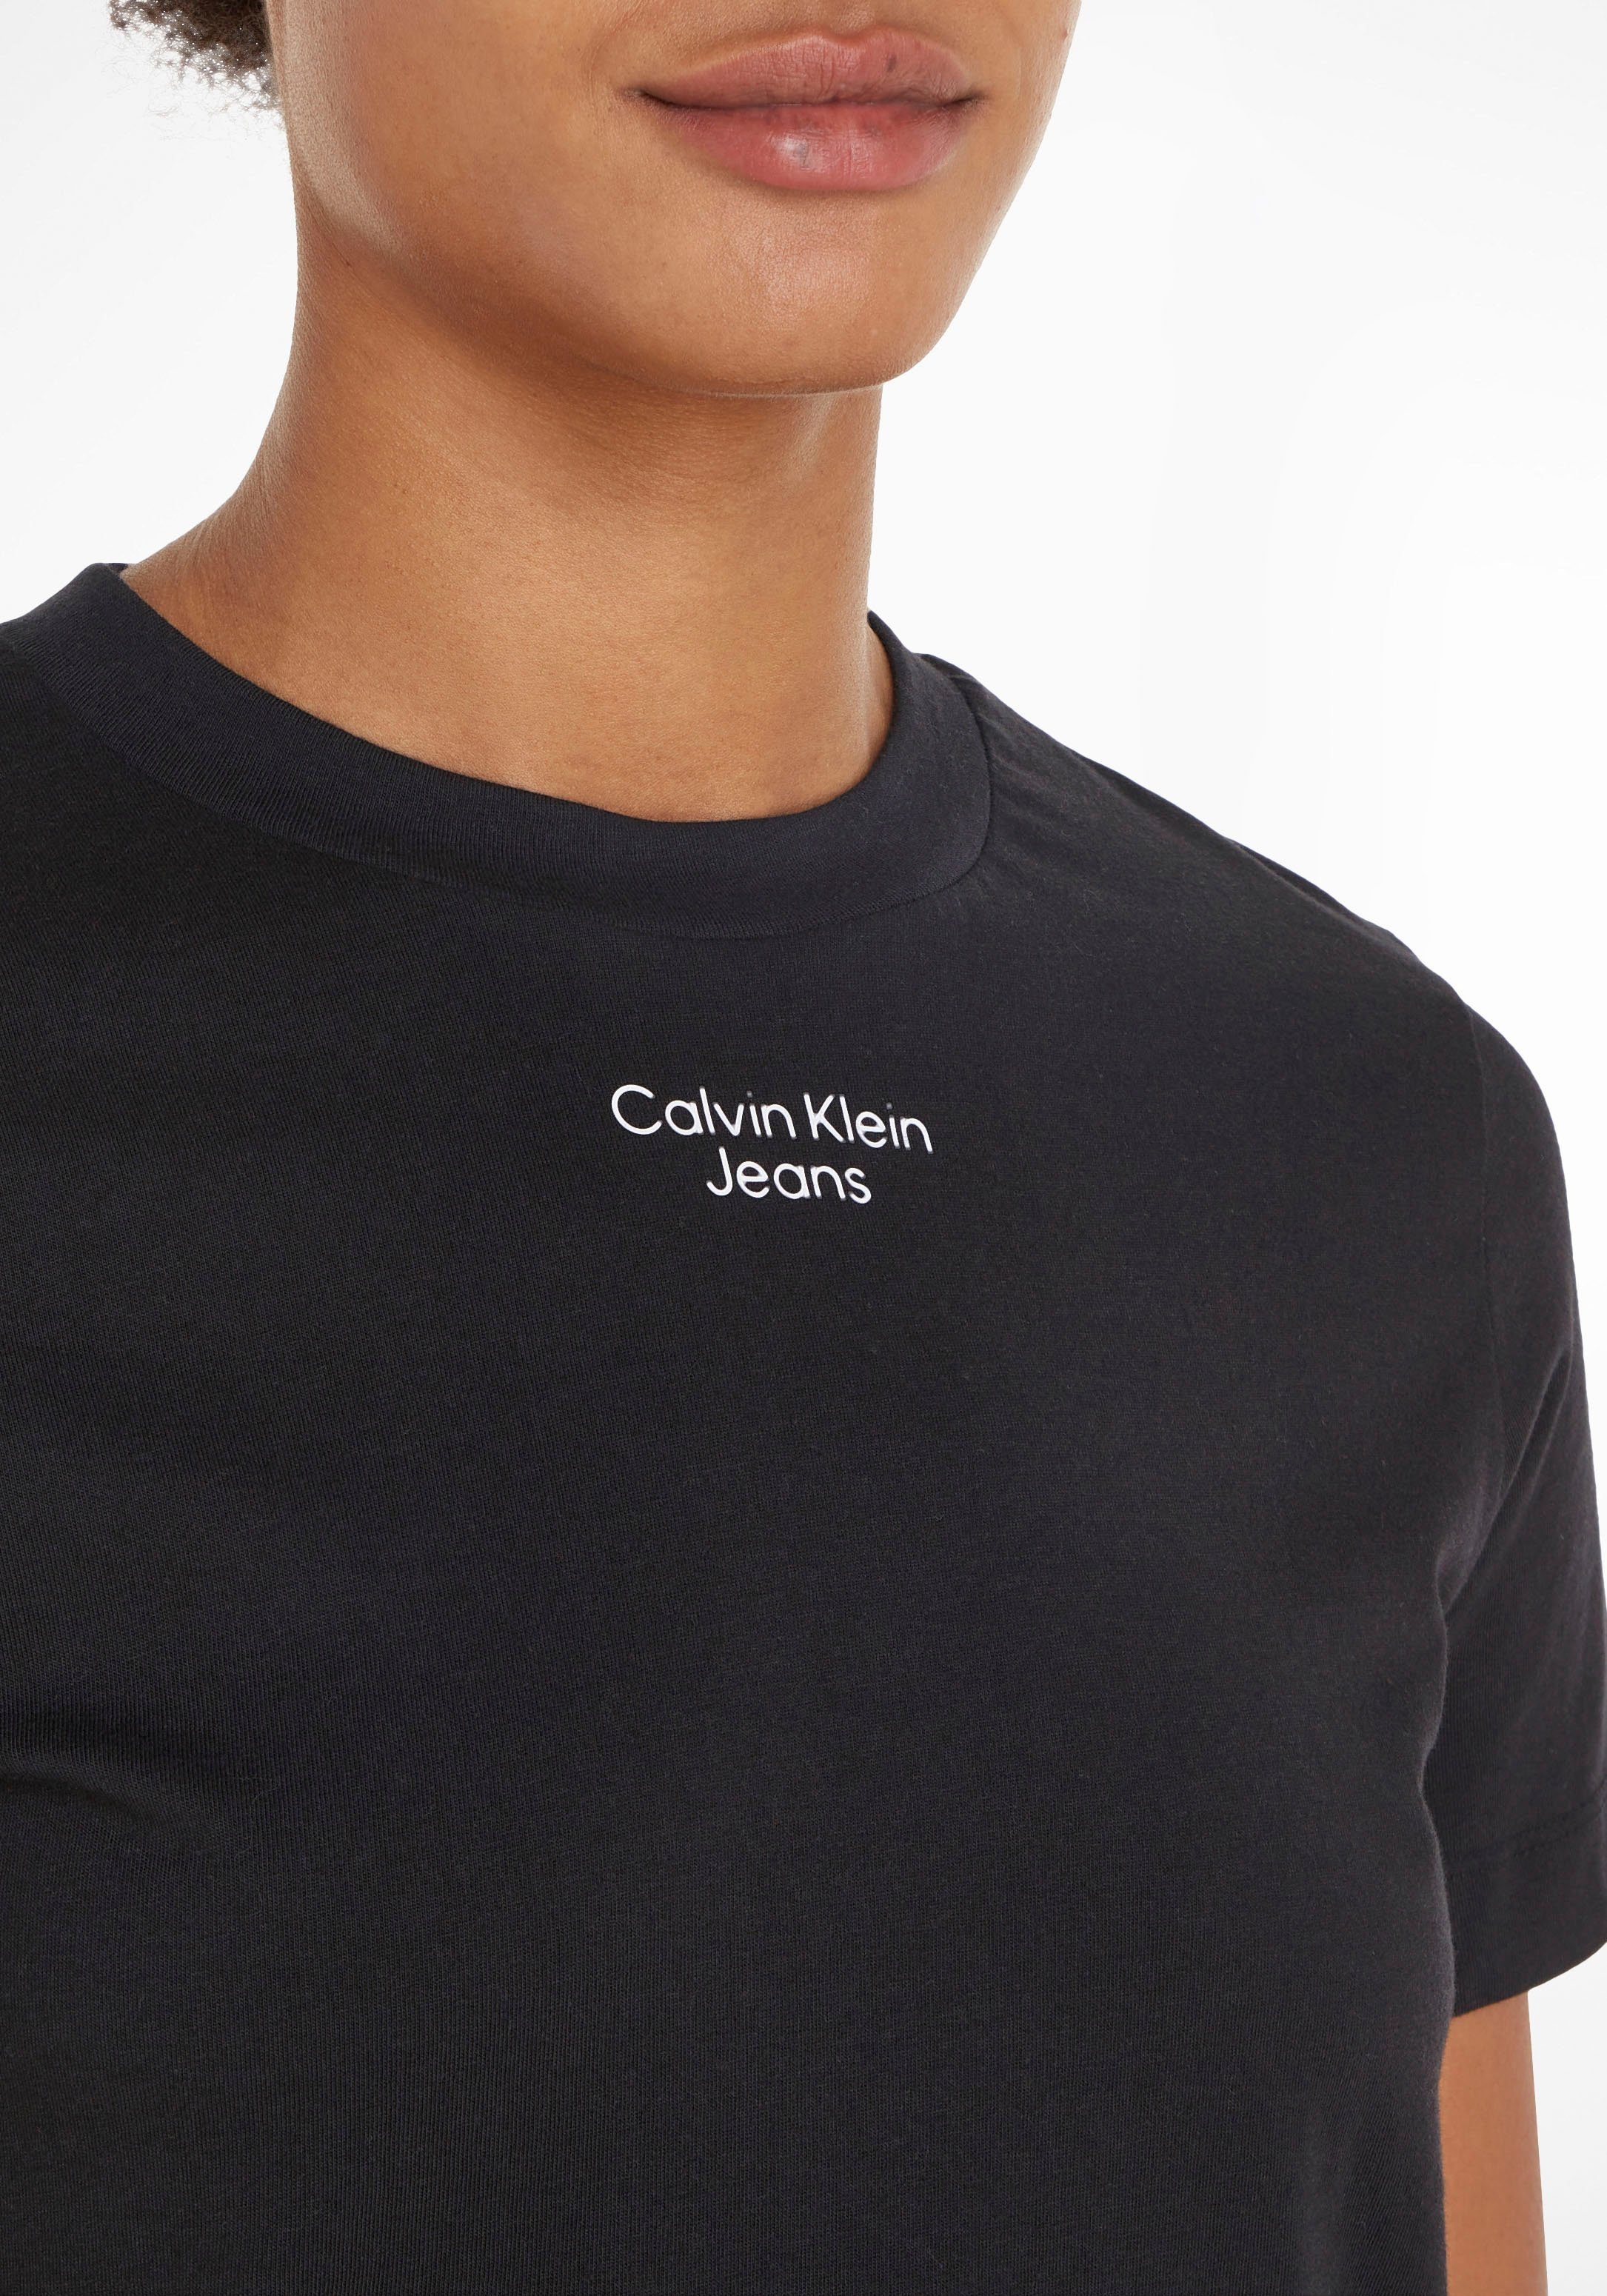 Jeans LOGO Klein Logodruck Calvin TEE Black Klein STRAIGHT MODERN Jeans Calvin Ck mit T-Shirt STACKED dezentem